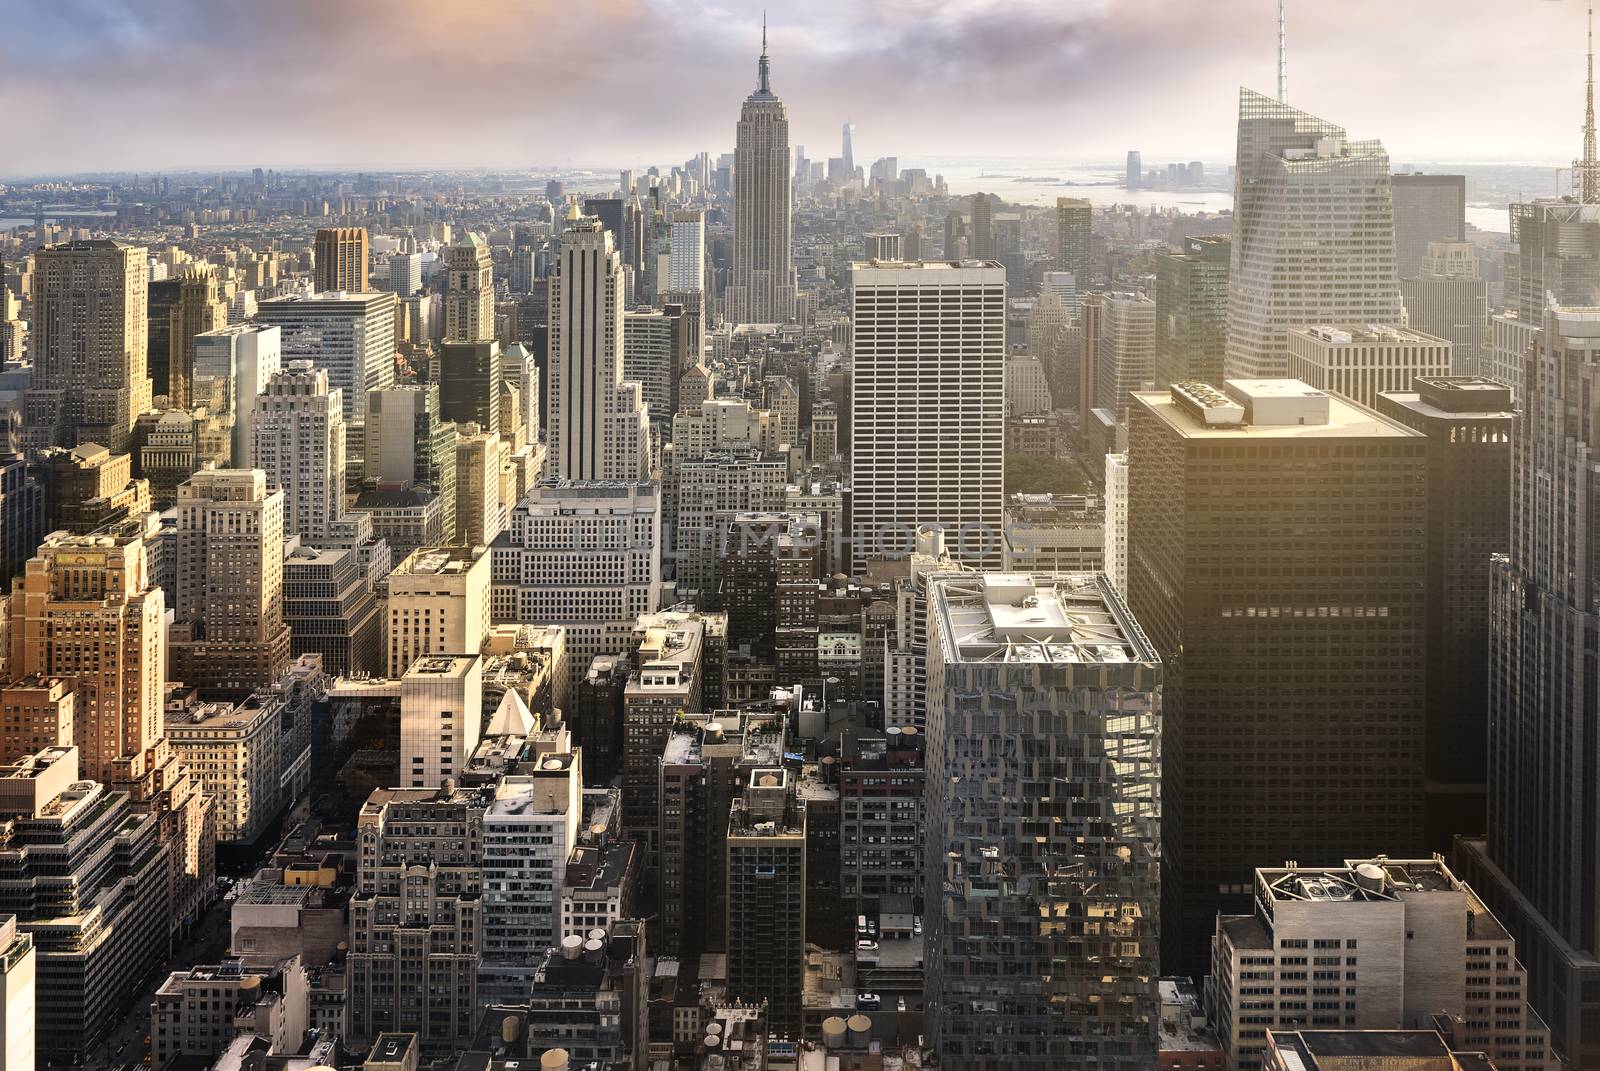 New York City skyline by ventdusud